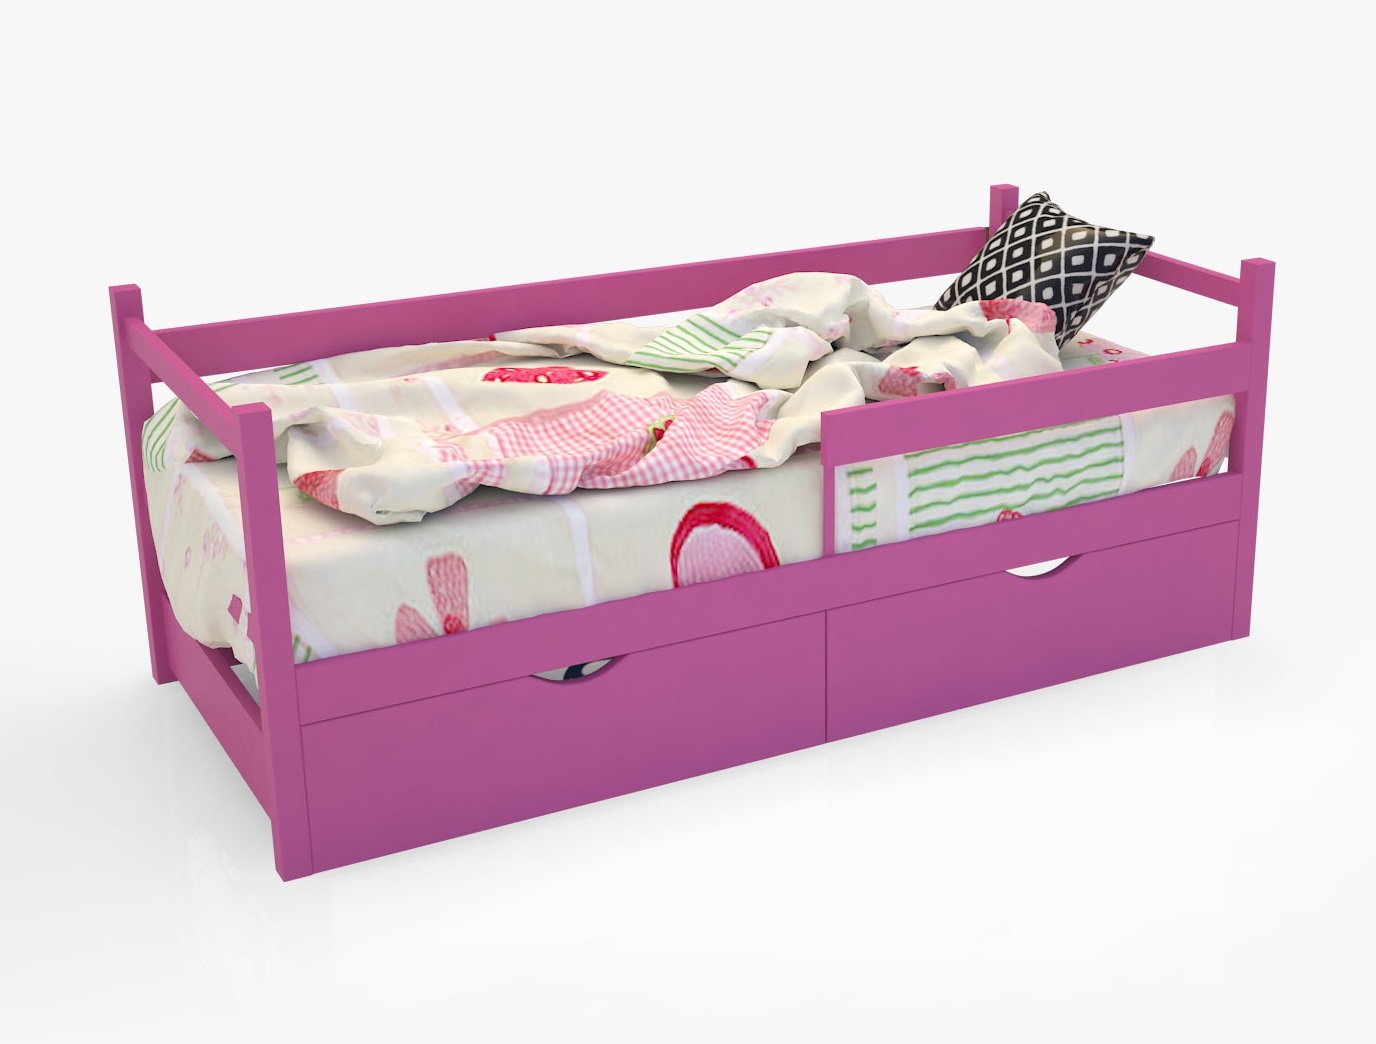 Кровать-тахта scandi без доп.опций magic cars розовый 76x77x165 см.